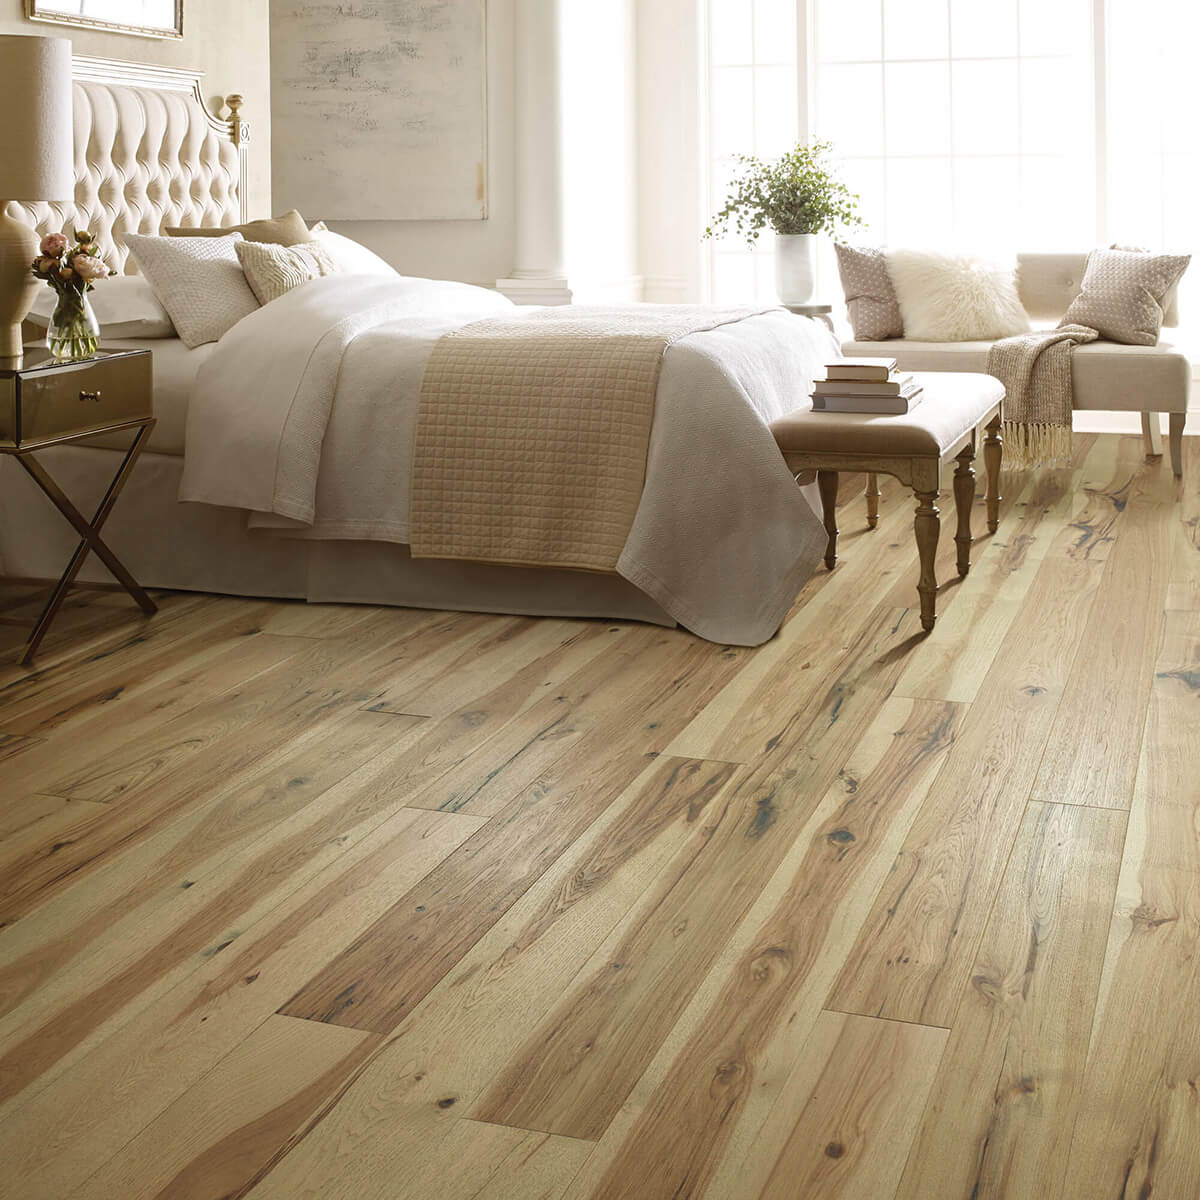 Hardwood flooring for bedroom | Wall 2 Wall Flooring